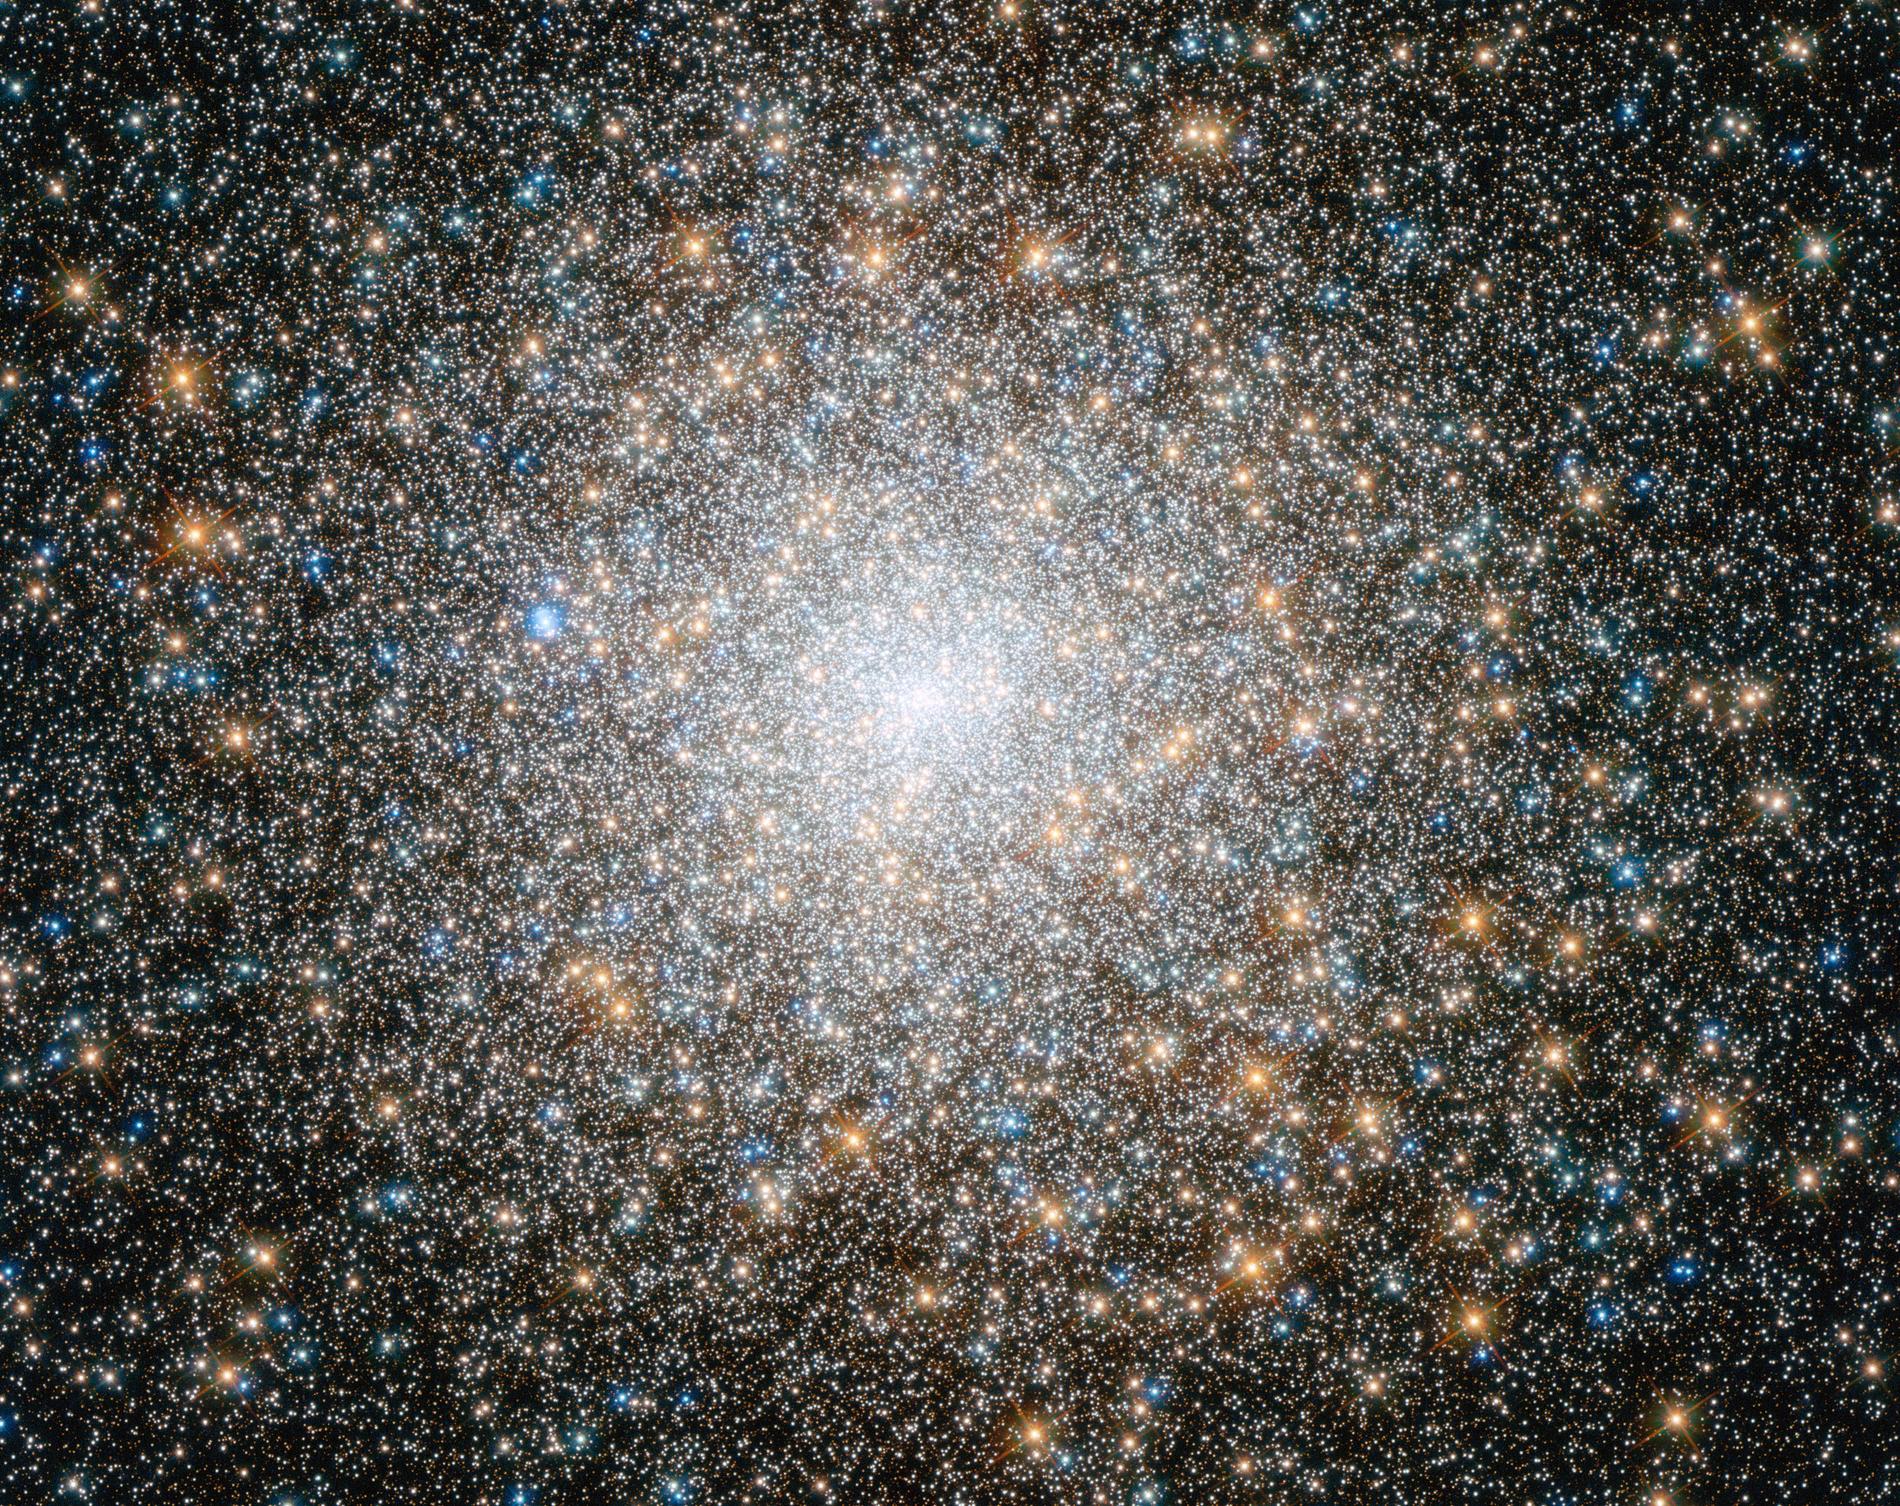 Den ovanligt täta stjärnhopen Messier 15, belägen 35000 ljusår från jorden i stjärnbilden Pegasus, innehåller drygt 100000 stjärnor. Eller två miljondelar av stjärnorna i vår galax. Med en bra kikare kan du hitta den själv men då ser klustret mest ut som en suddig stjärna, för att urskilja detaljer behöver du ett teleskop.